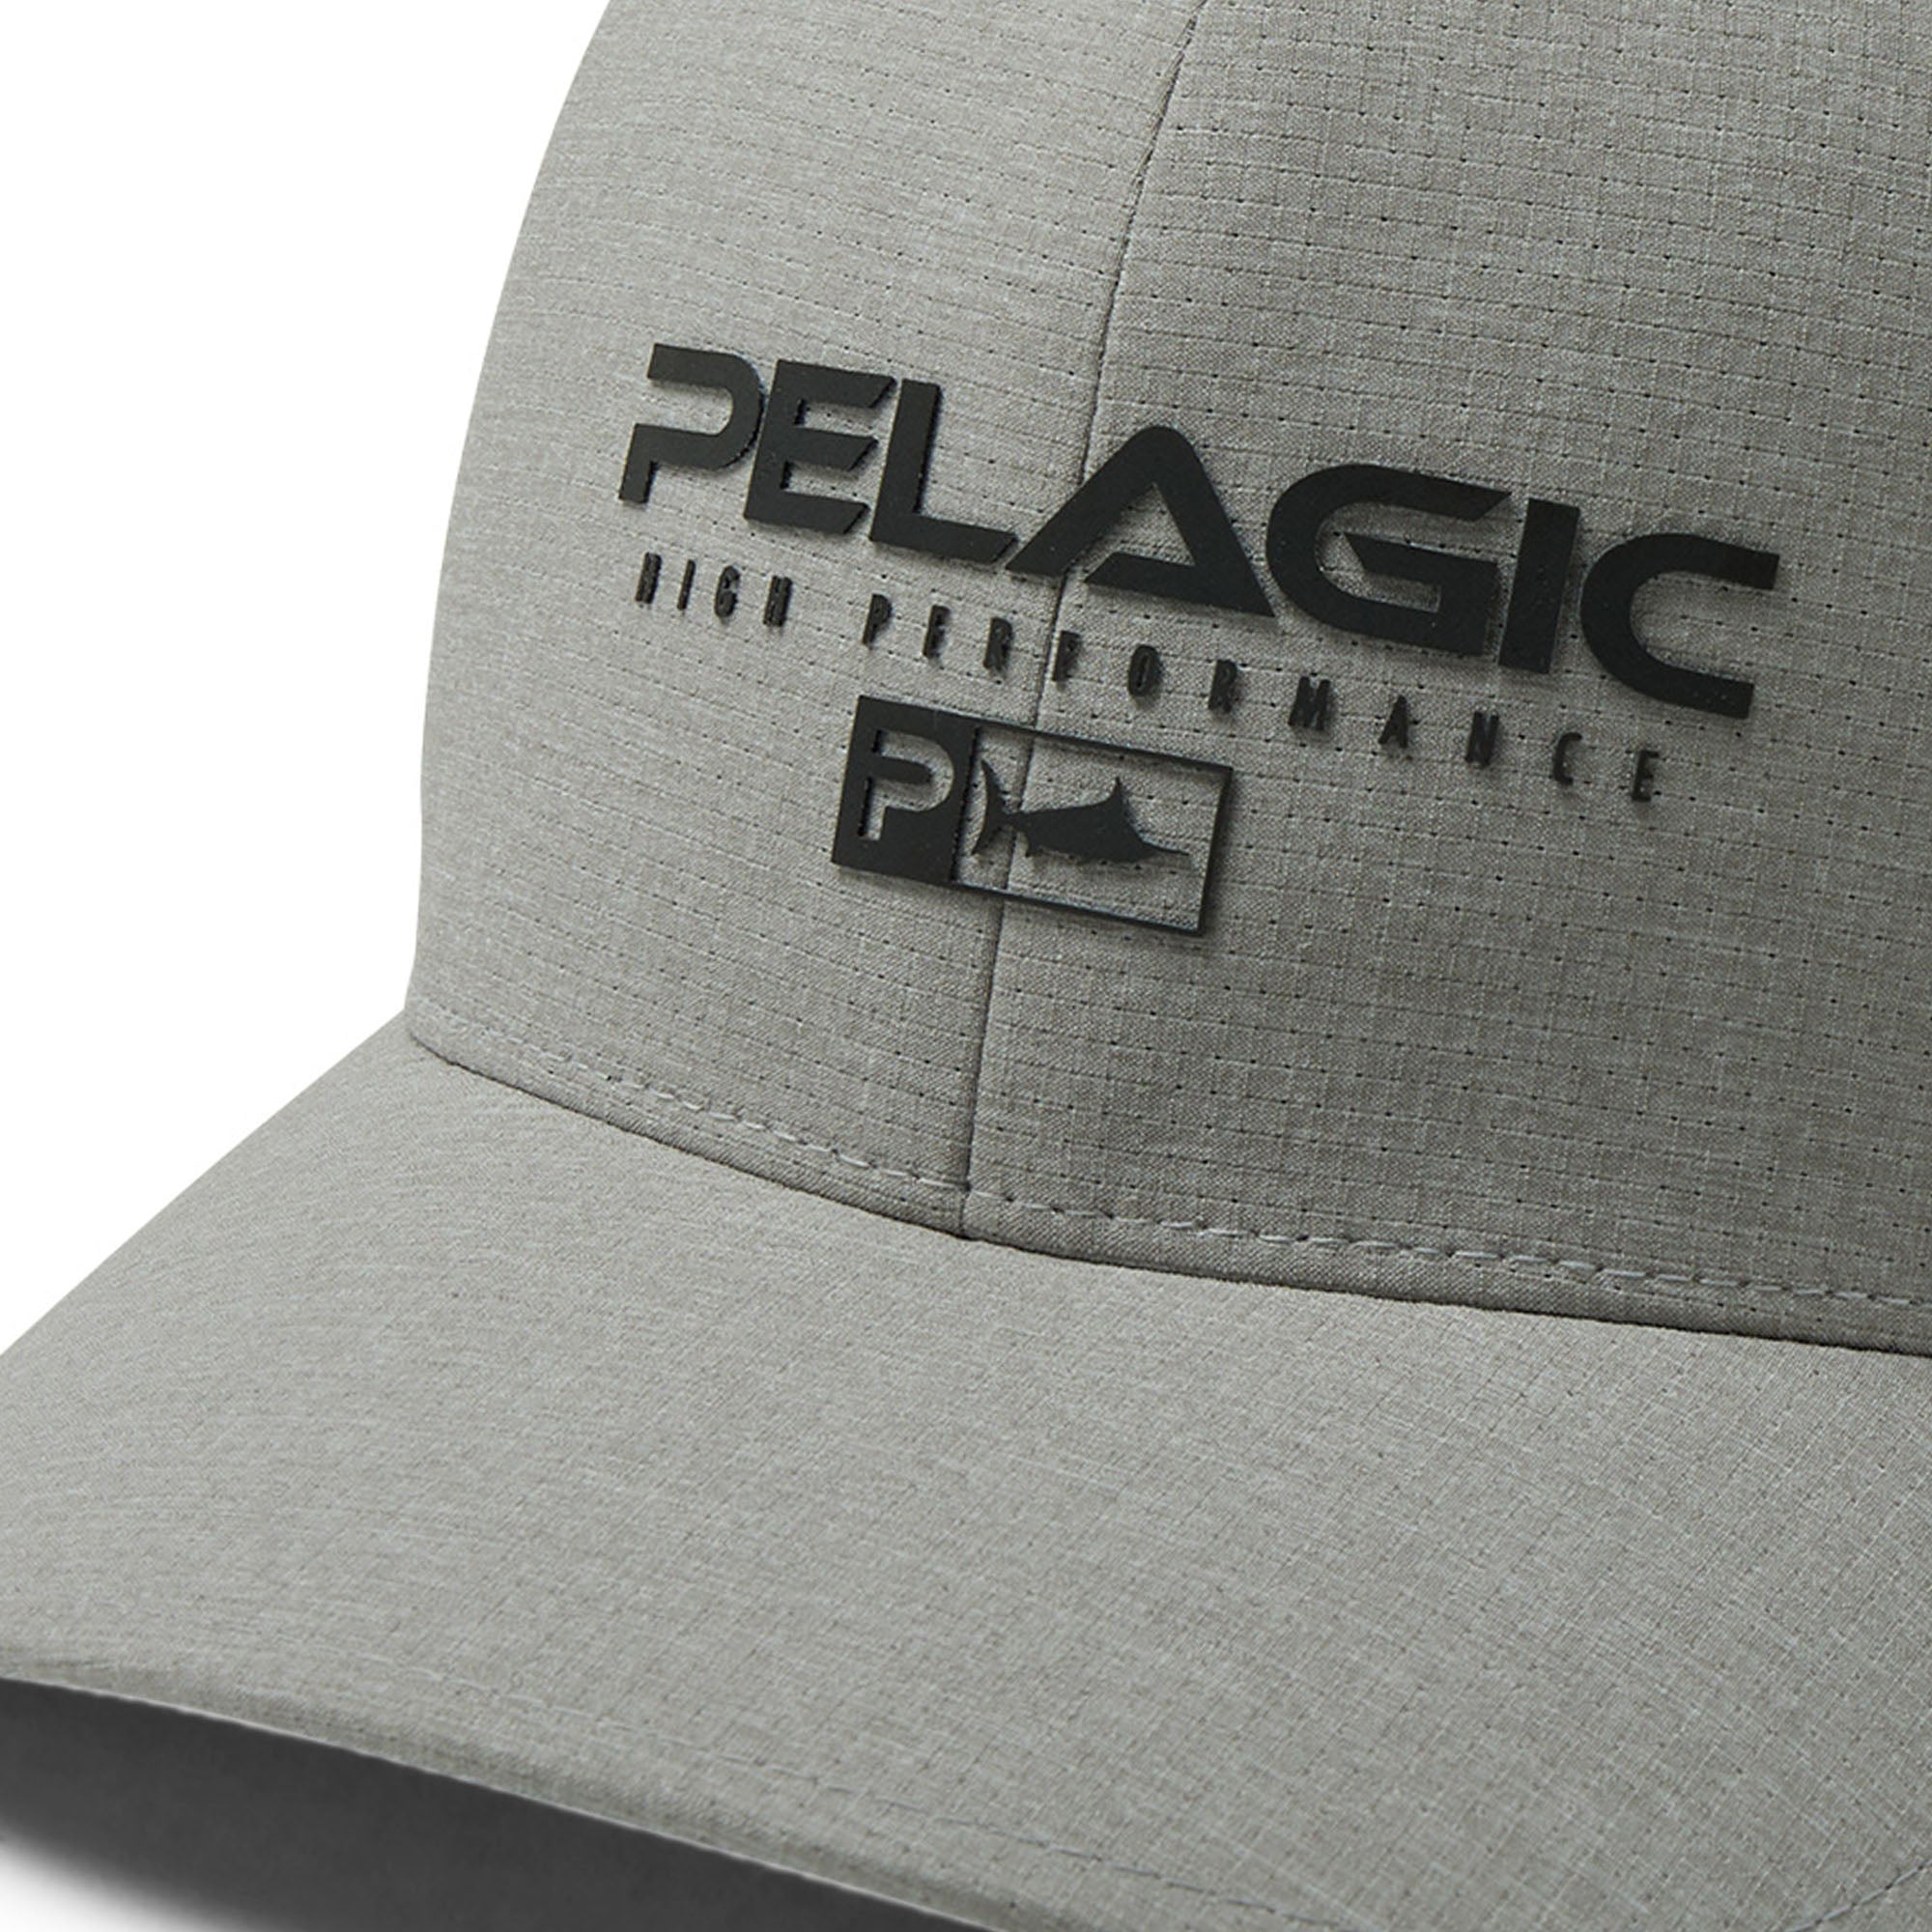 Pelagic Flexfit Fishing Hat